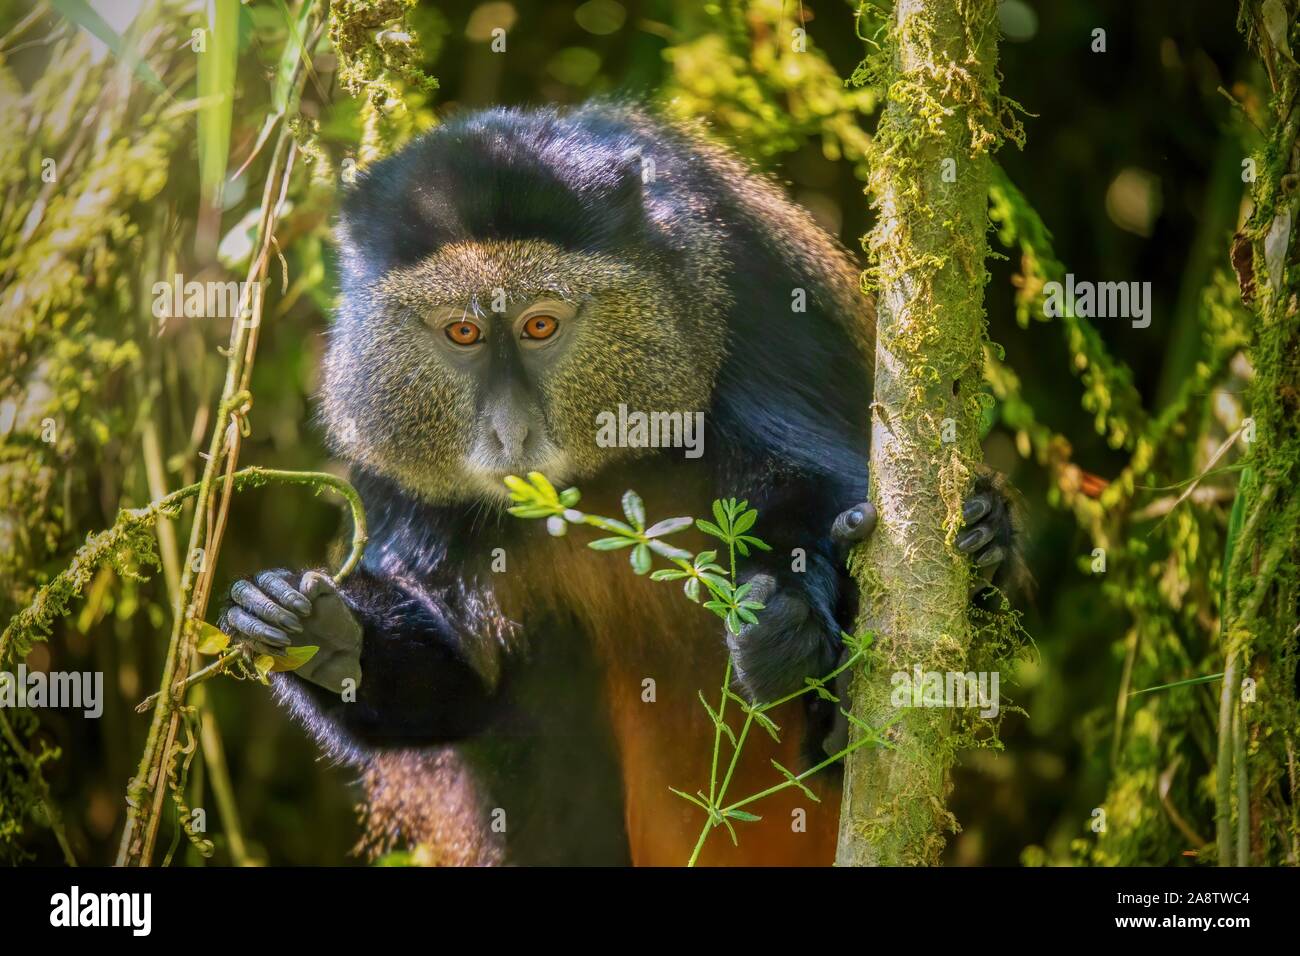 Vista ravvicinata di una selvaggia scimmia dorata (Latino - Cercopithecus kandti), una specie in via di estinzione che vive nel proprio habitat naturale, un bosco di bambù in Ruanda. Foto Stock